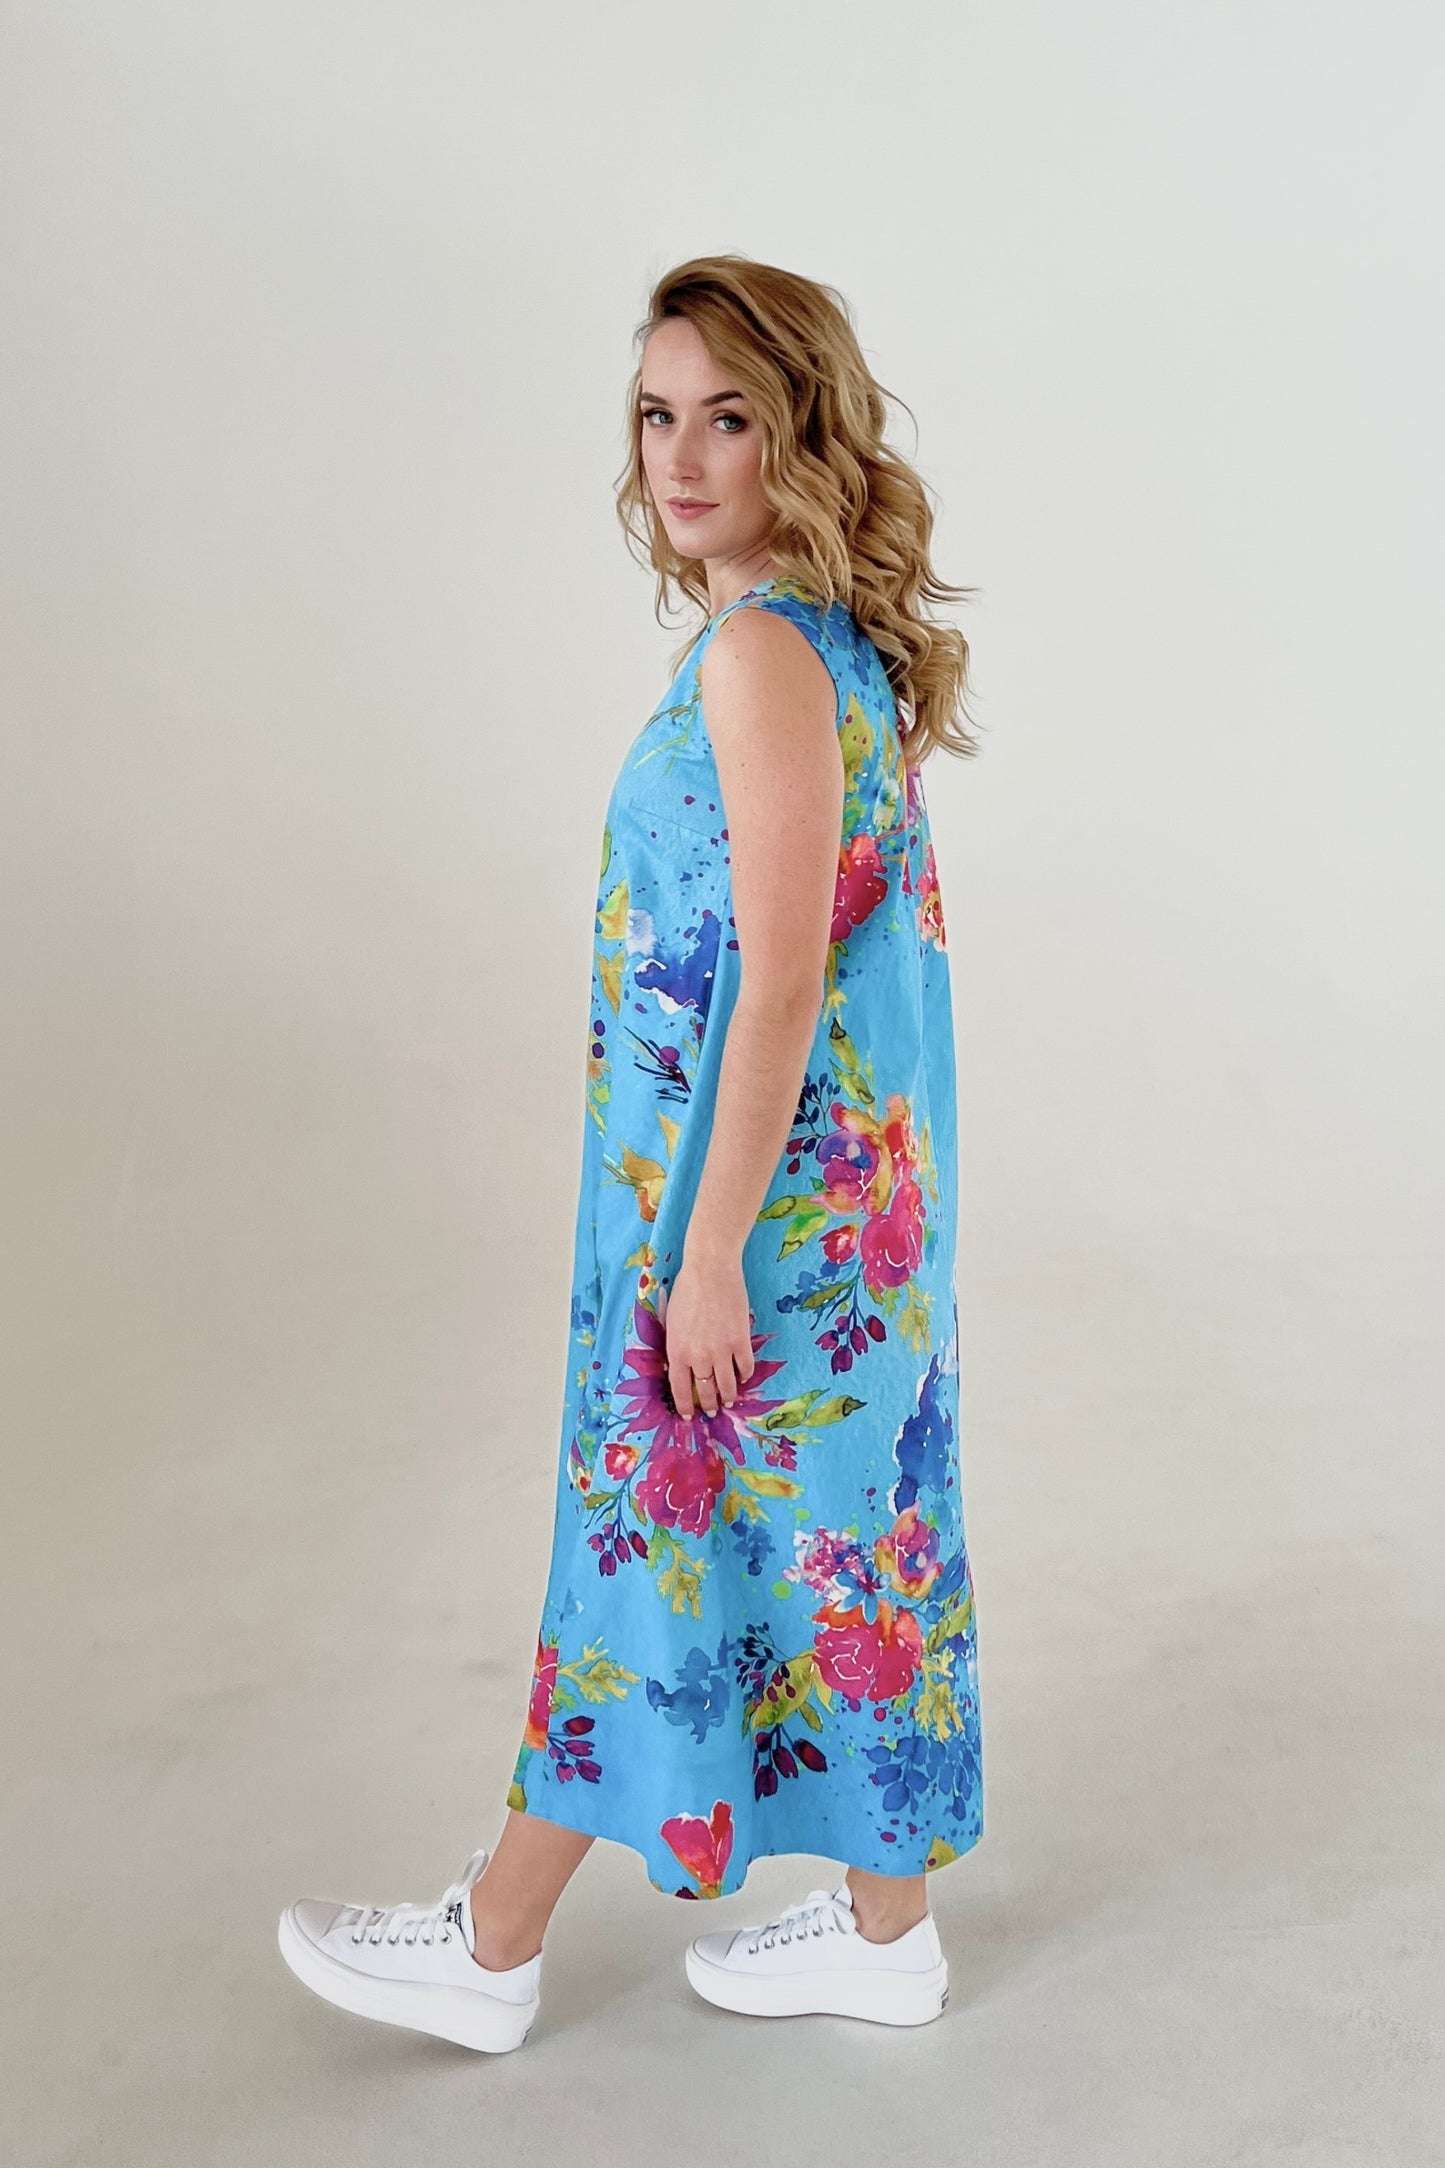 Vienkārša zvanveida kleita ar kabatām, koši zila ar ziediem